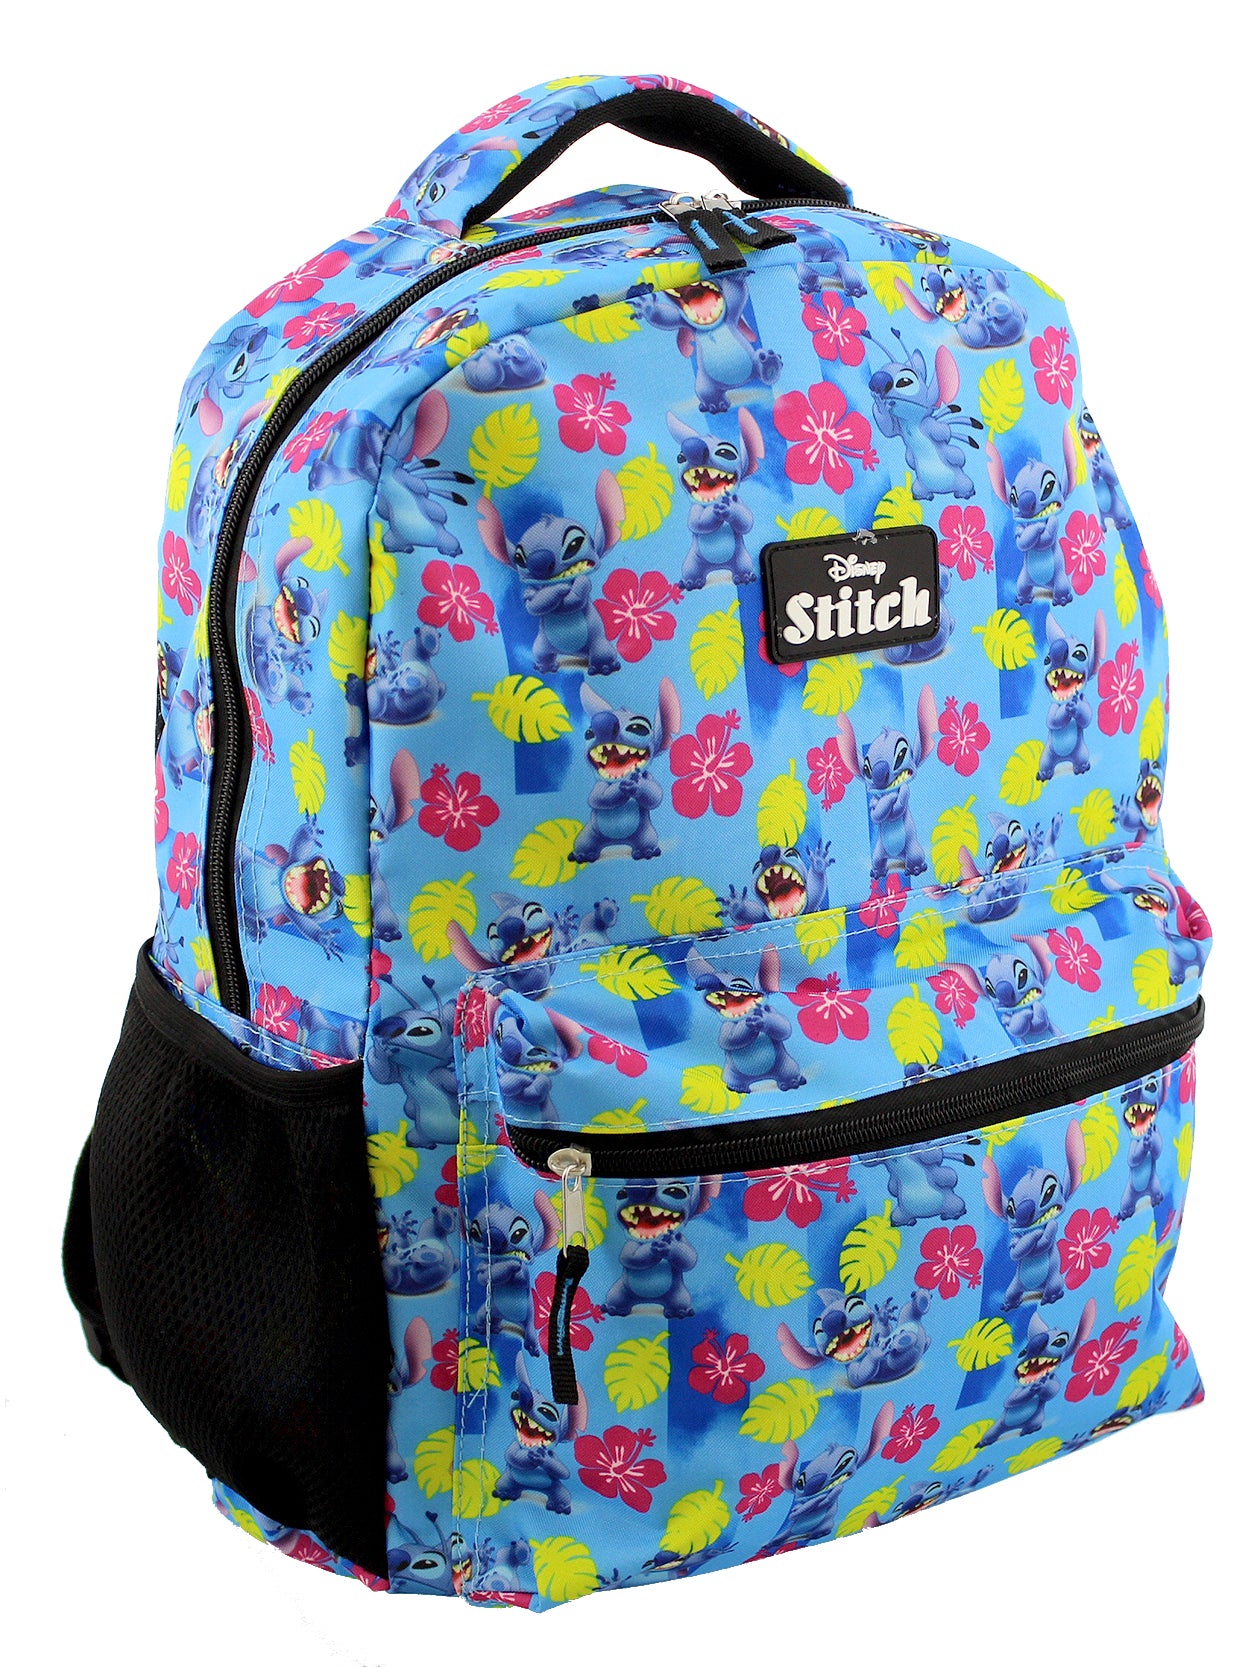 Lilo & Stitch Backpack, Shoulder Bag, Pen Bag, Student Black School Bag,  3pcs/Set (#9) - Walmart.com